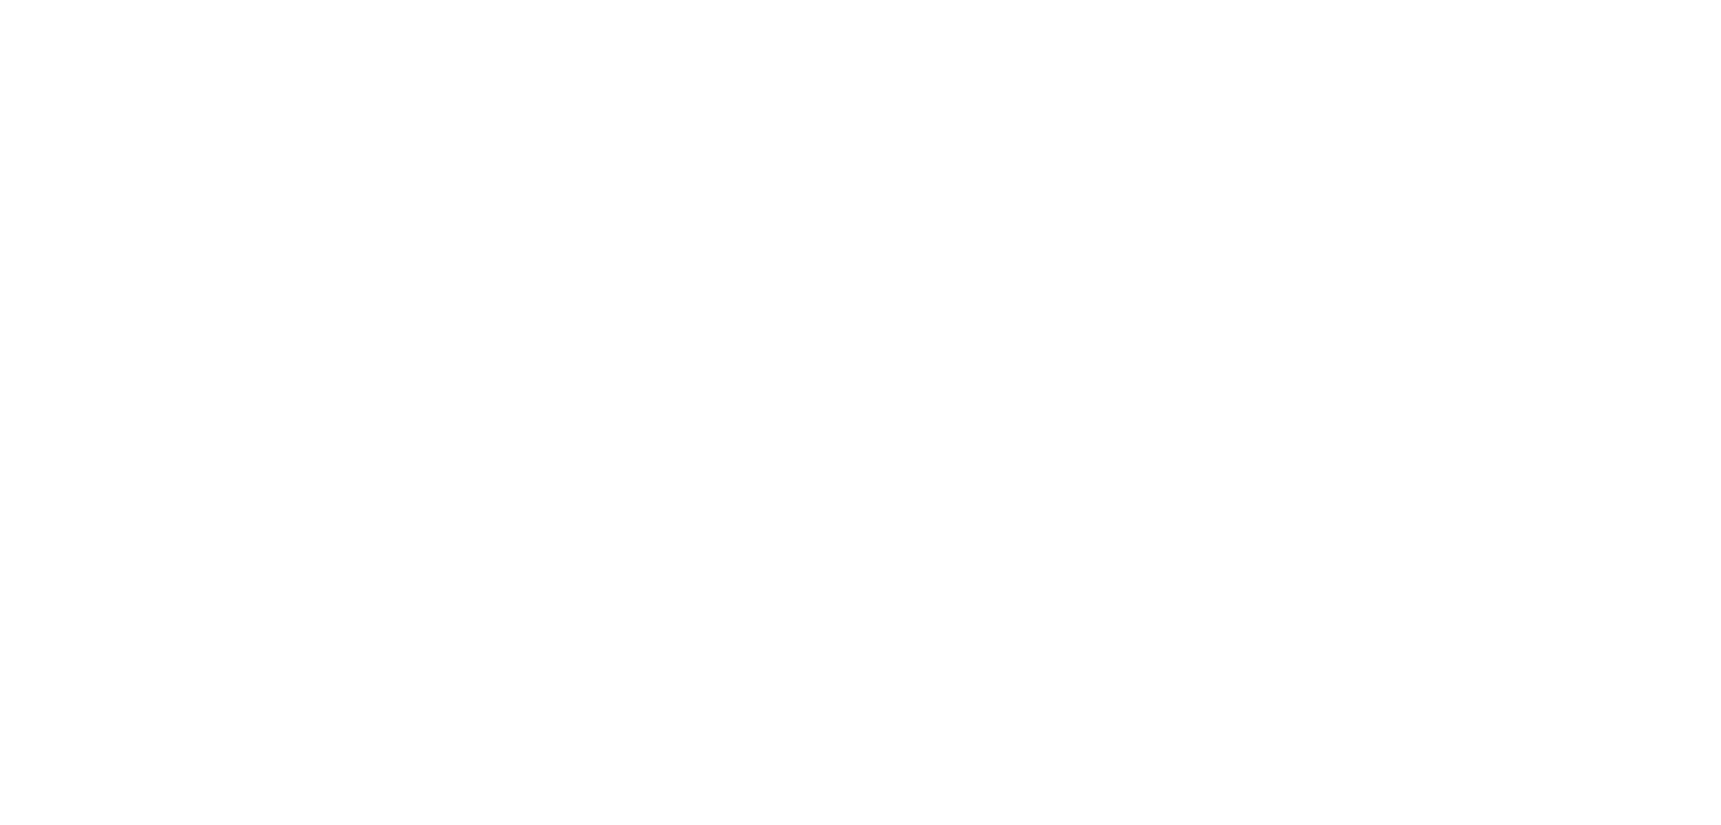 König Equestrian I Heste wellness I Aquatræning I Bemer Terapi I Lysterapi I Vibrationsgulv I Genoptræning I Ophold for heste